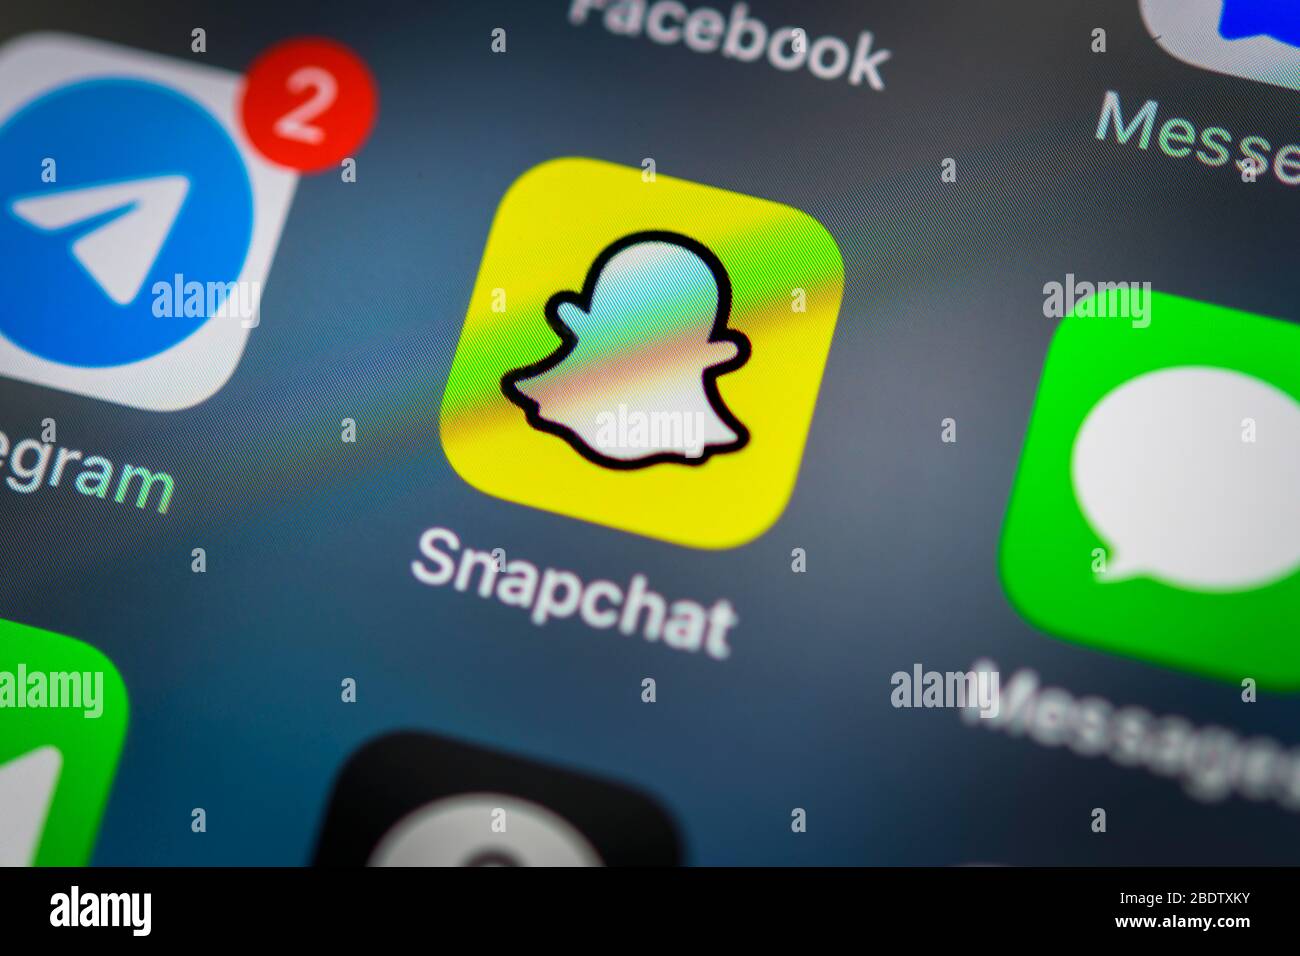 Application Snapchat, réseau social, icône d'application, affichage sur écran du téléphone mobile, smartphone, détails, format complet Banque D'Images